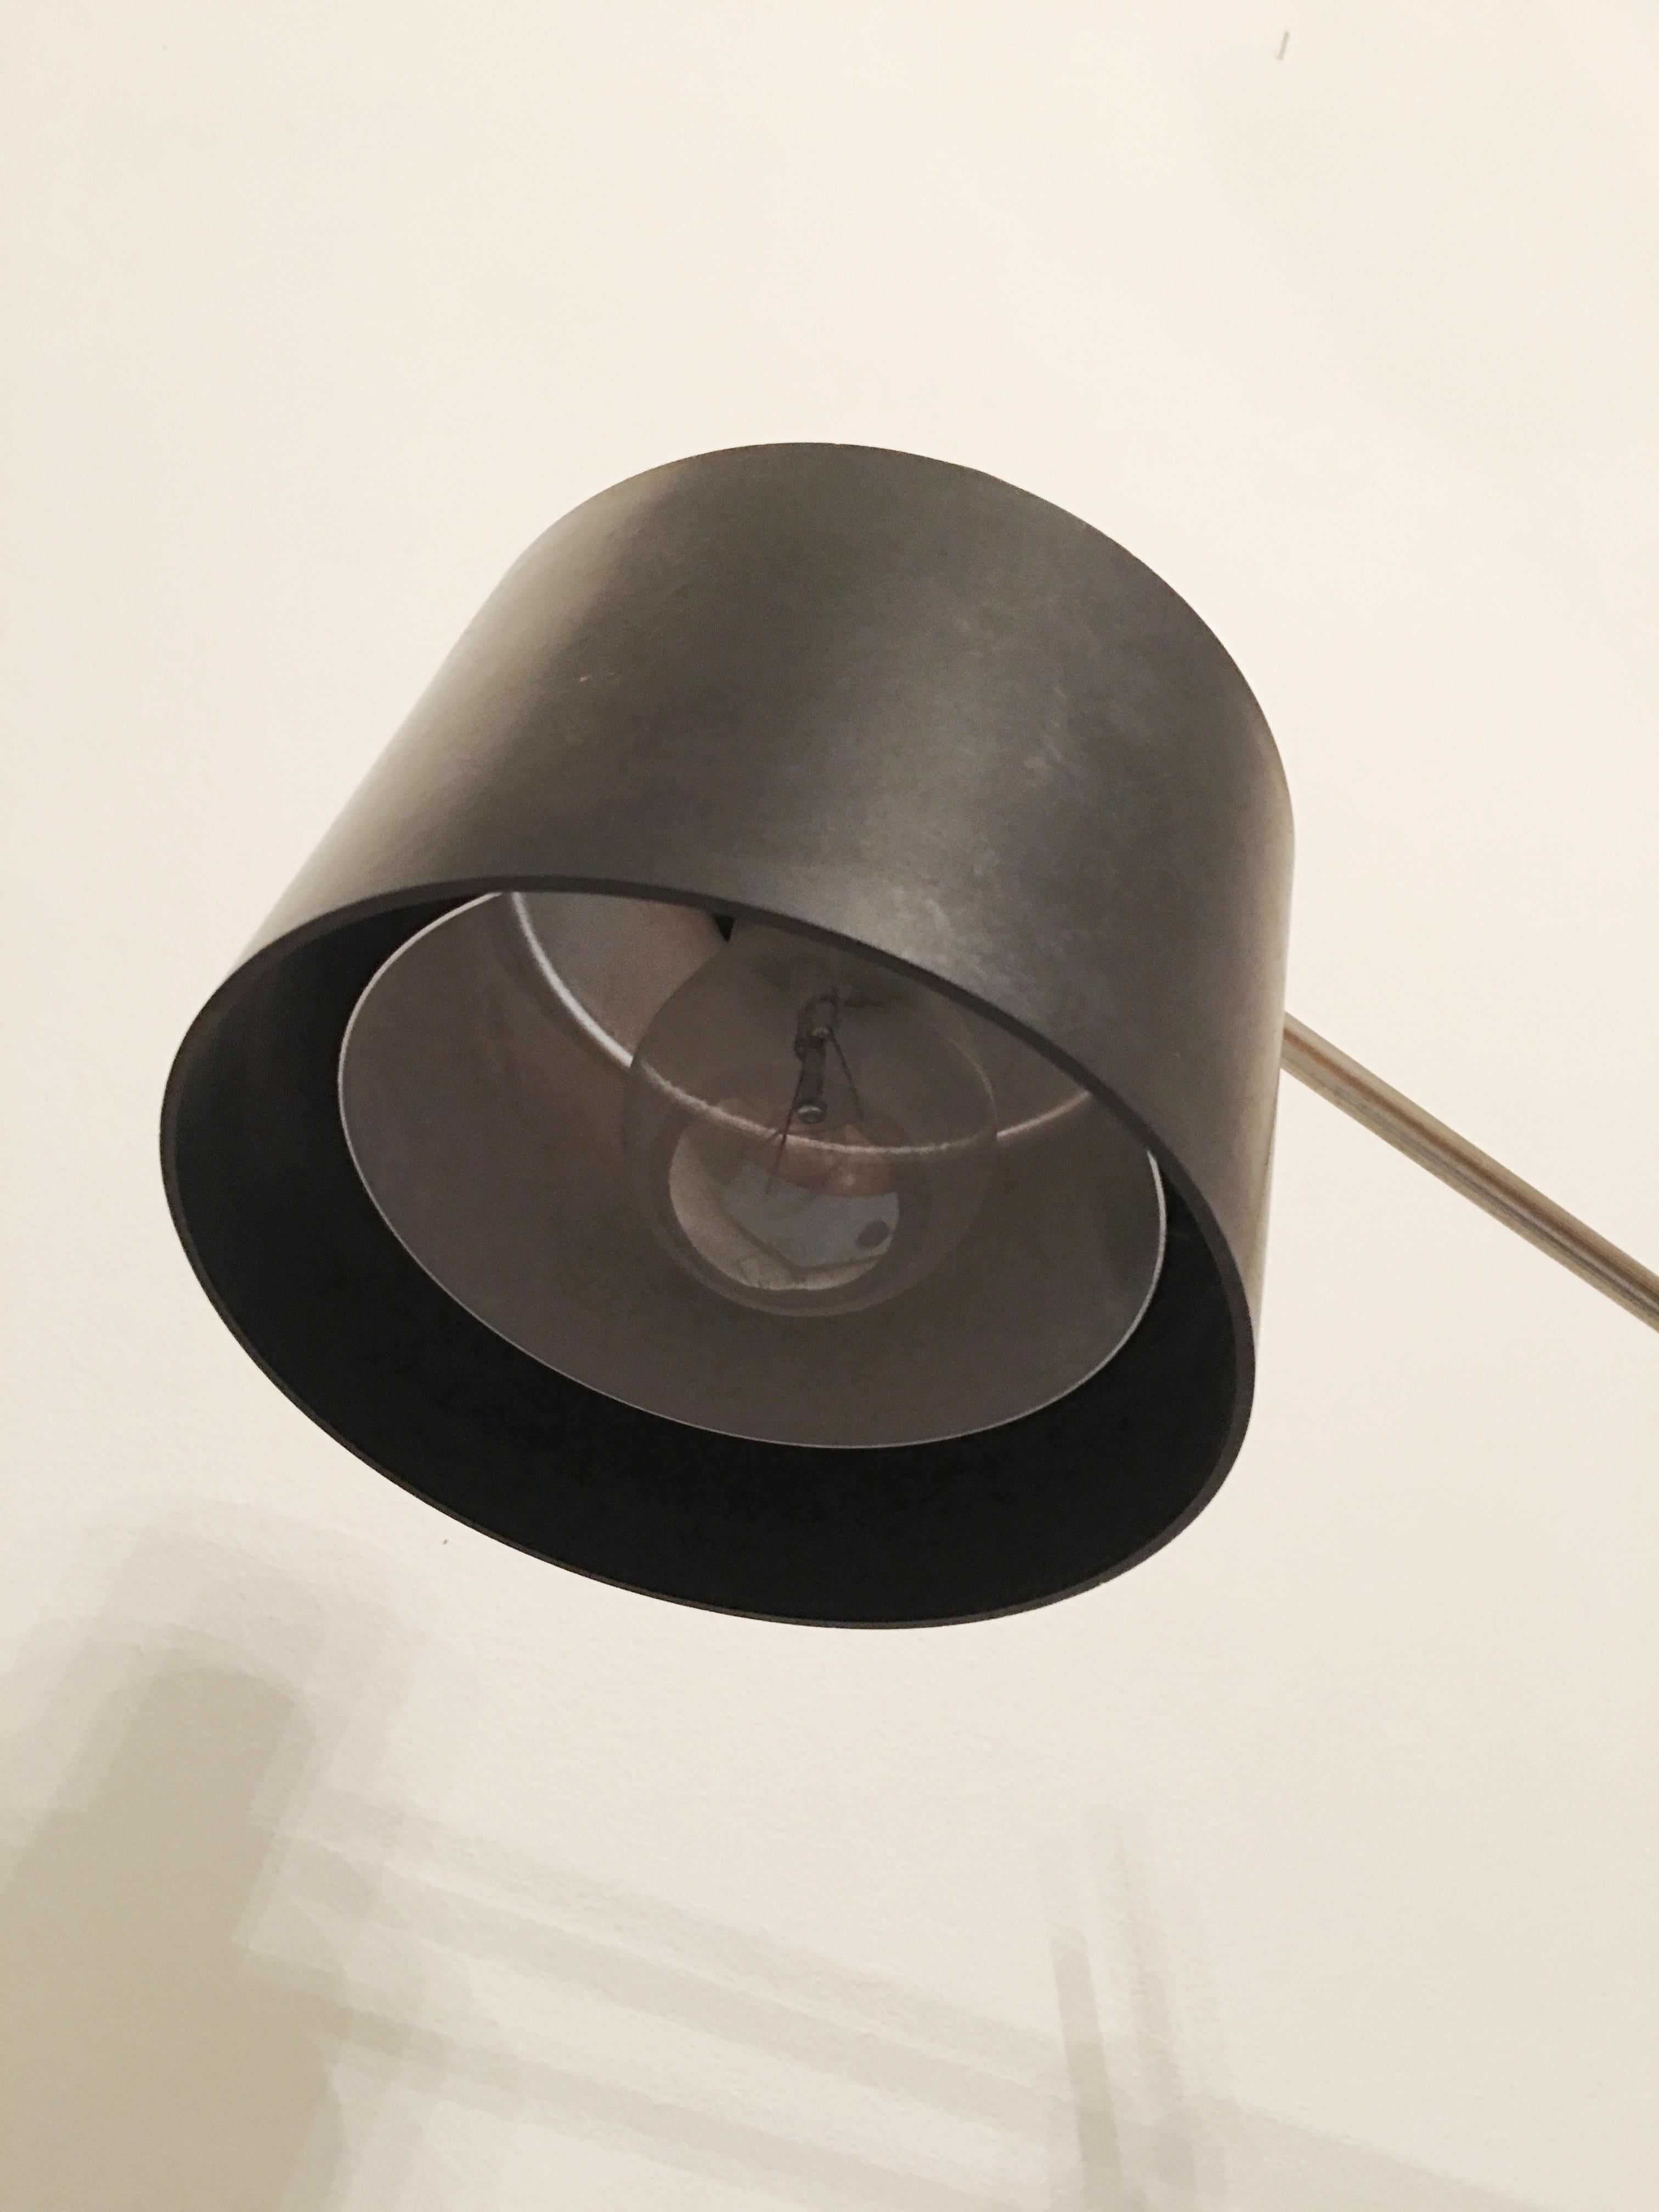 Industrial Office Lamp by Jan Suchan for Elektrosvit, 1967 For Sale 1